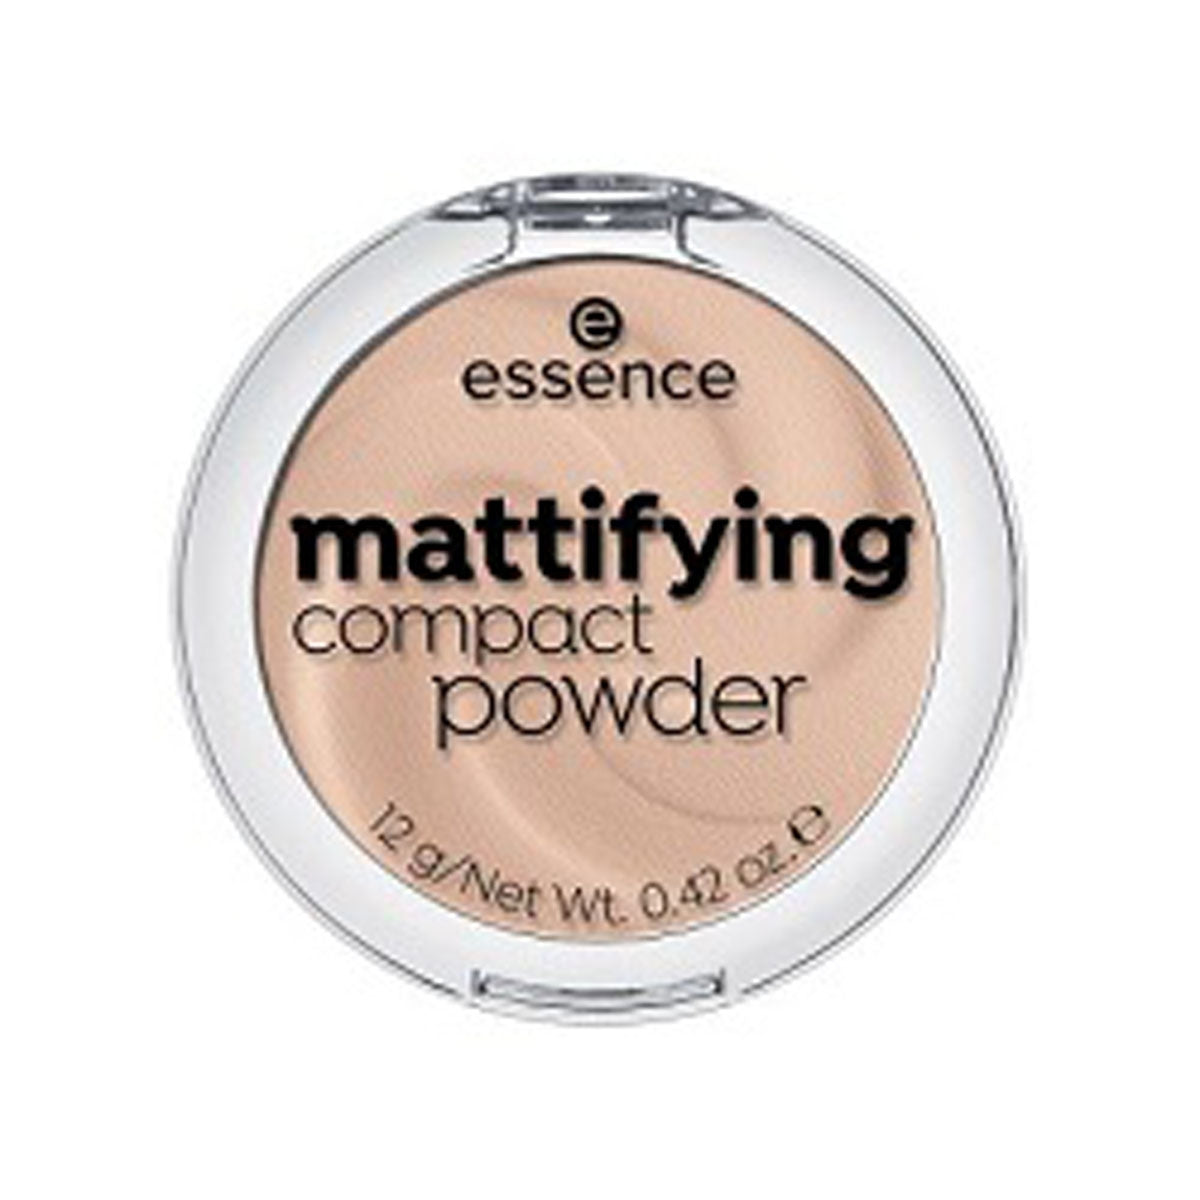 Essence - Mattifying Compact Powder - 11